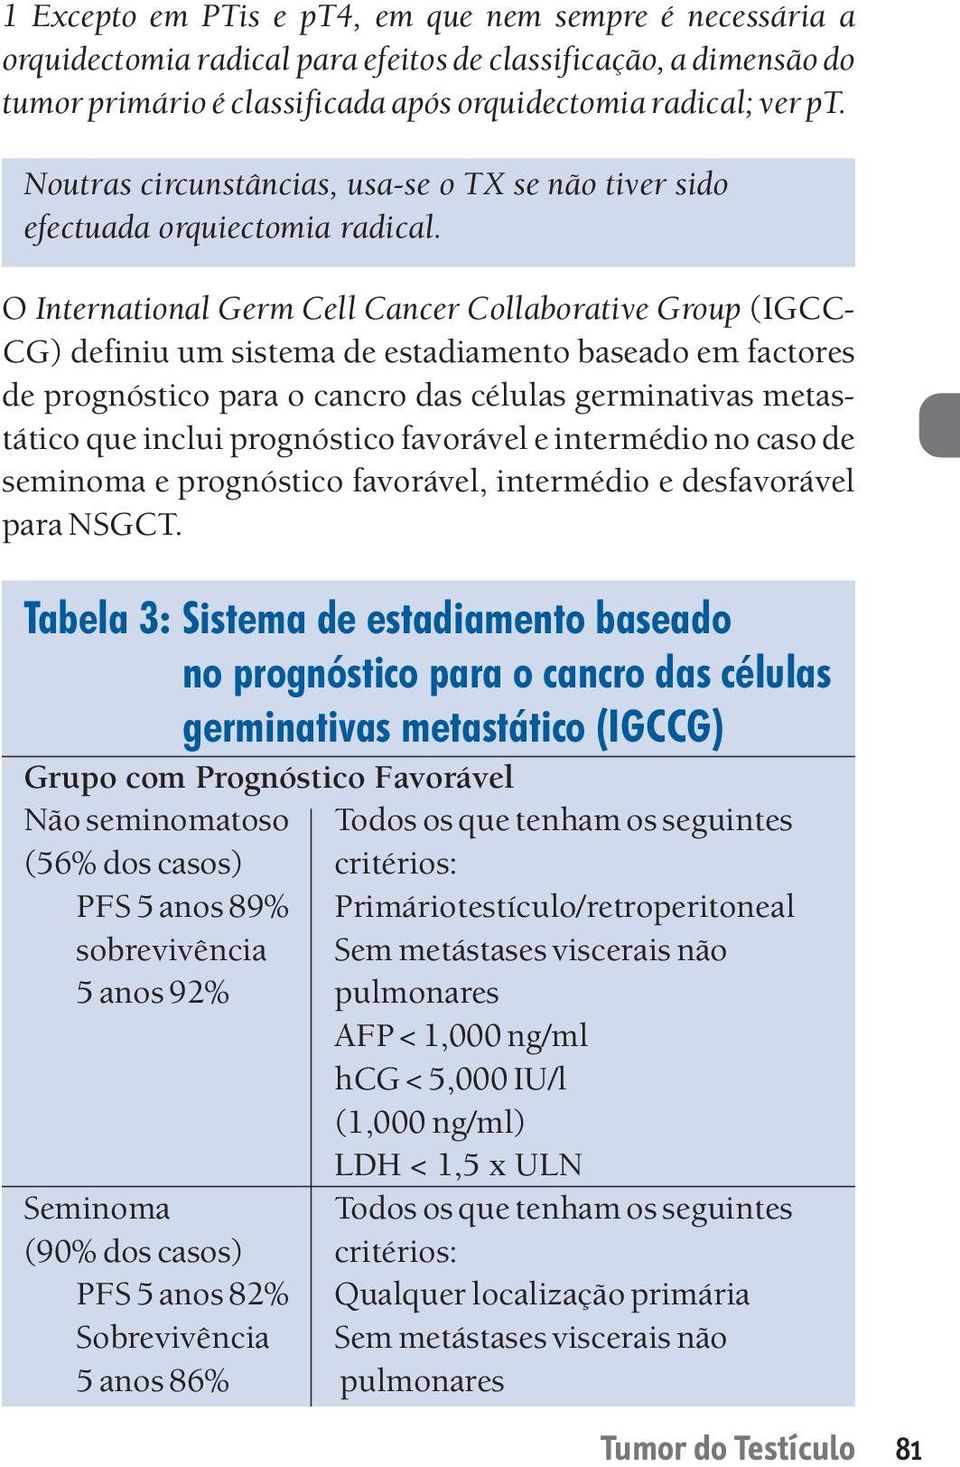 O International Germ Cell Cancer Collaborative Group (IGCC- CG) definiu um sistema de estadiamento baseado em factores de prognóstico para o cancro das células germinativas metastático que inclui